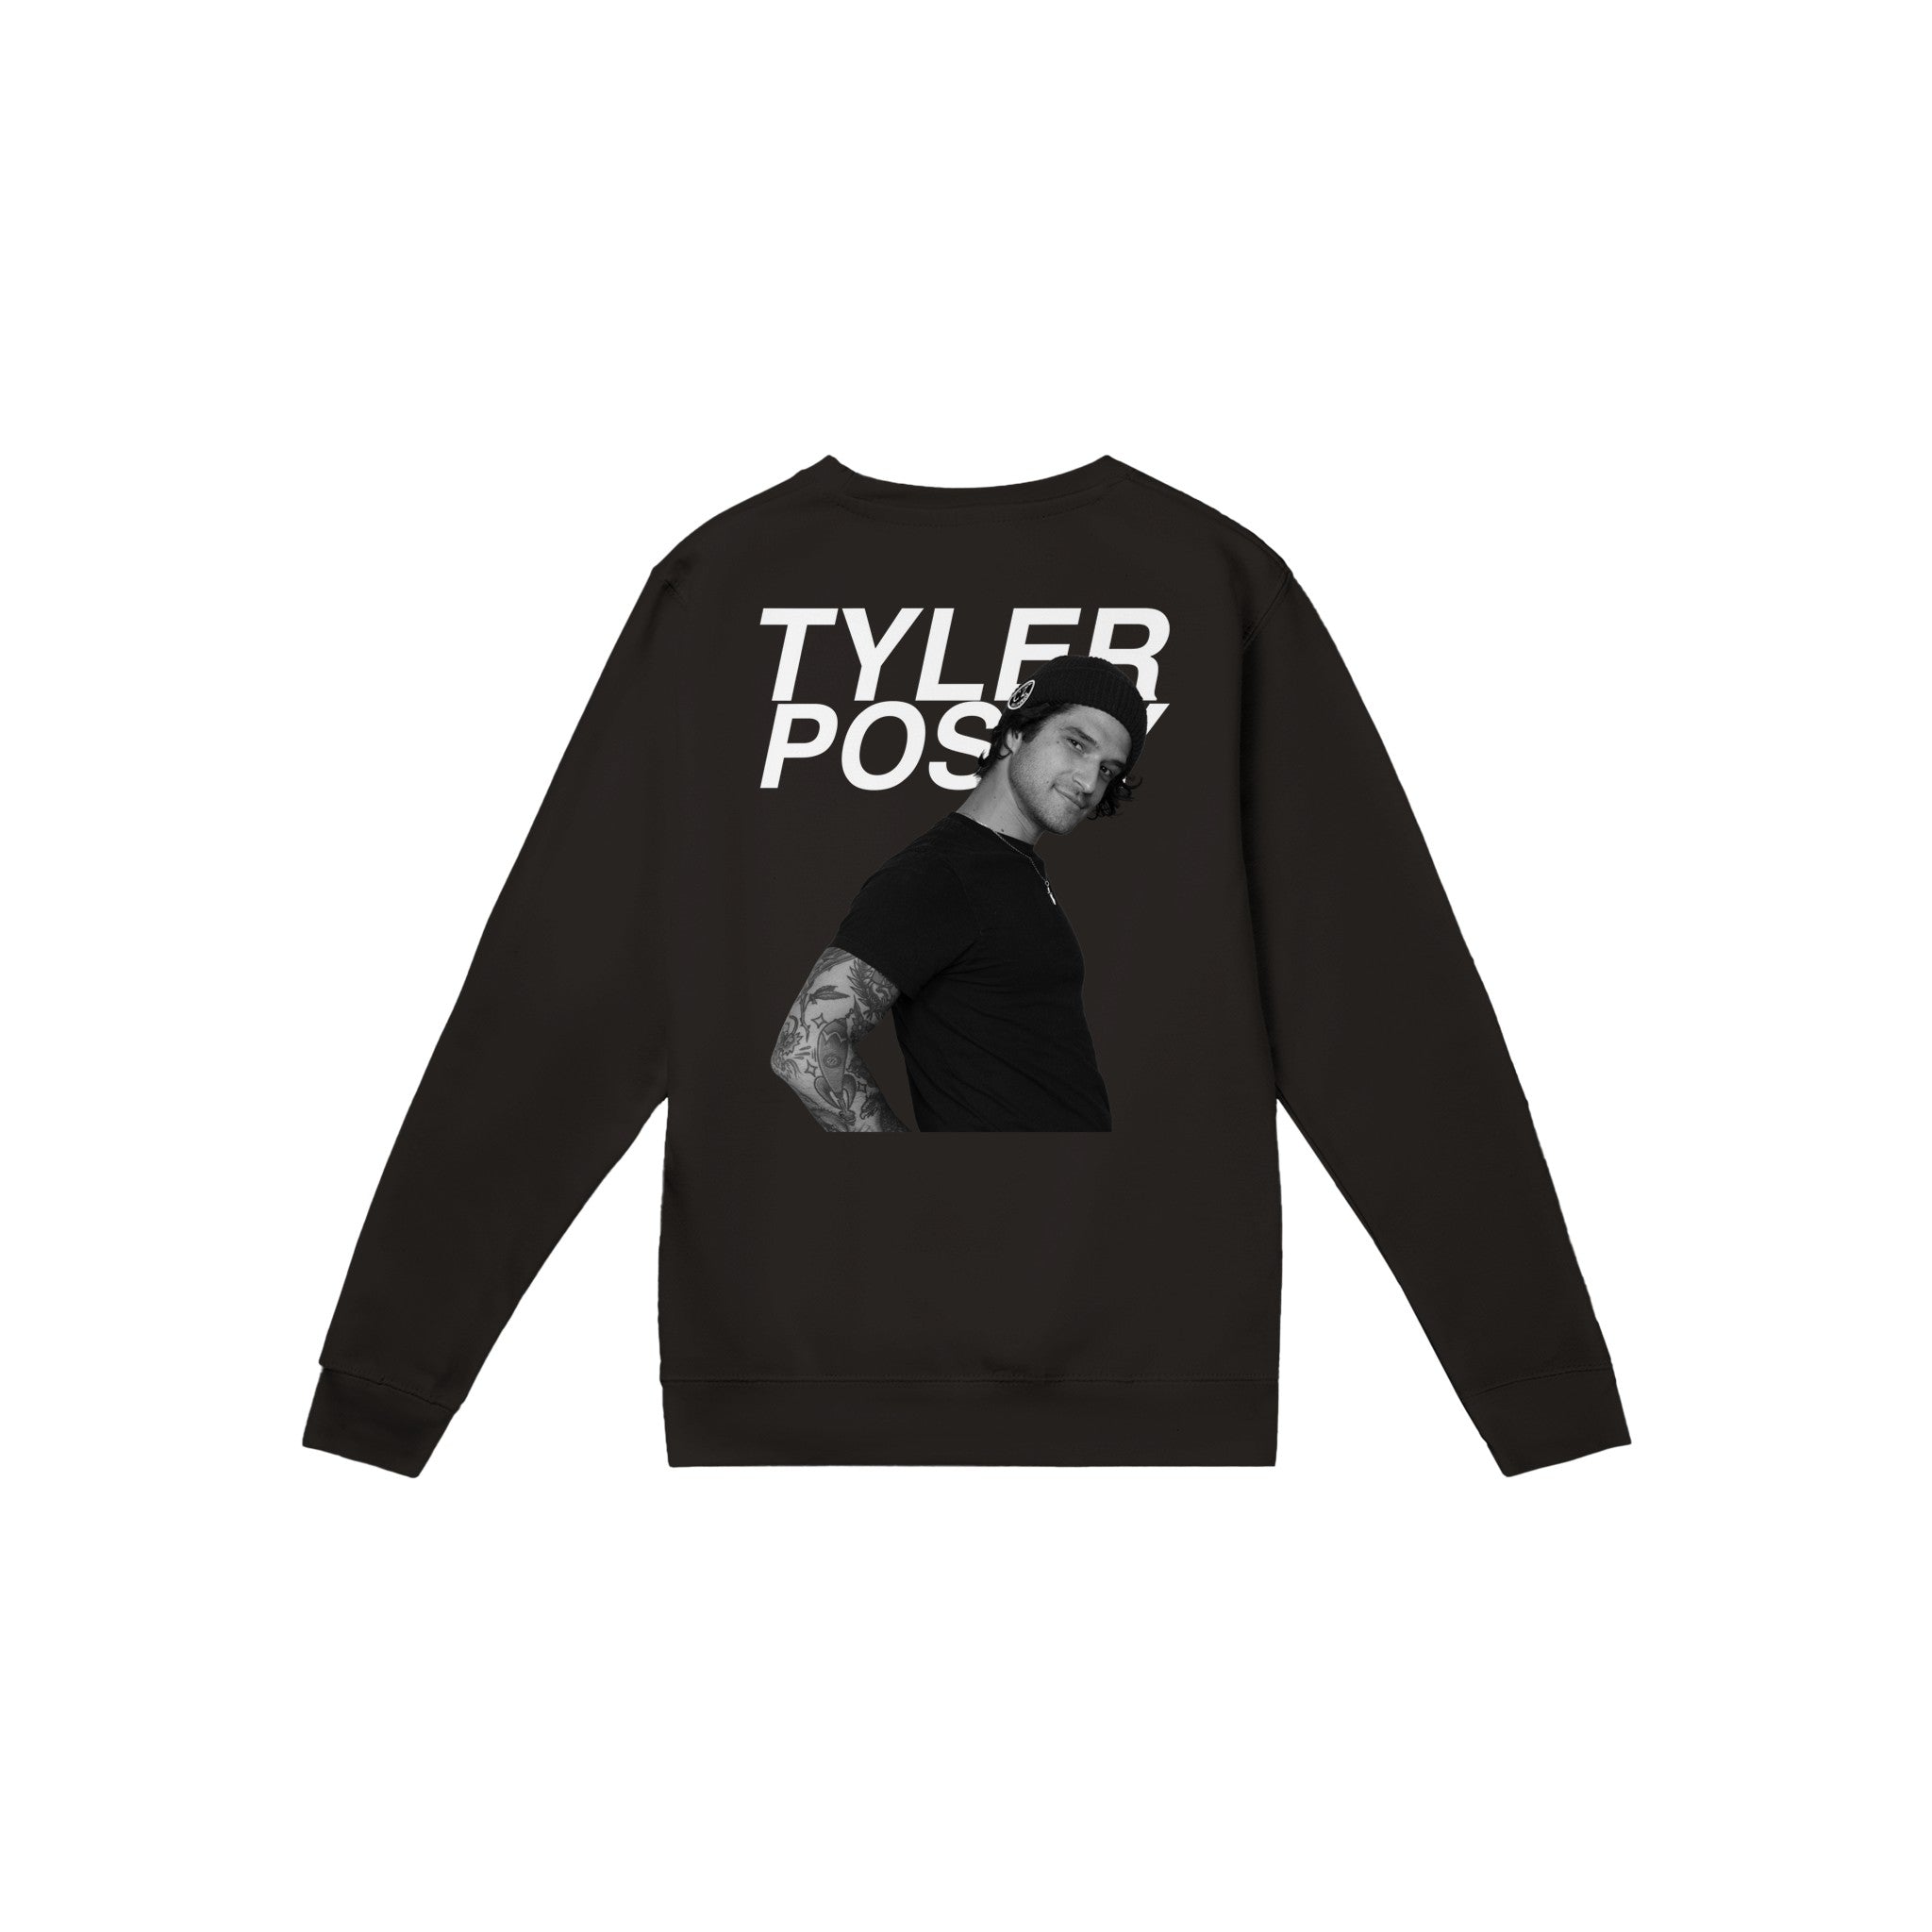 TYLER POSEY sweatshirt